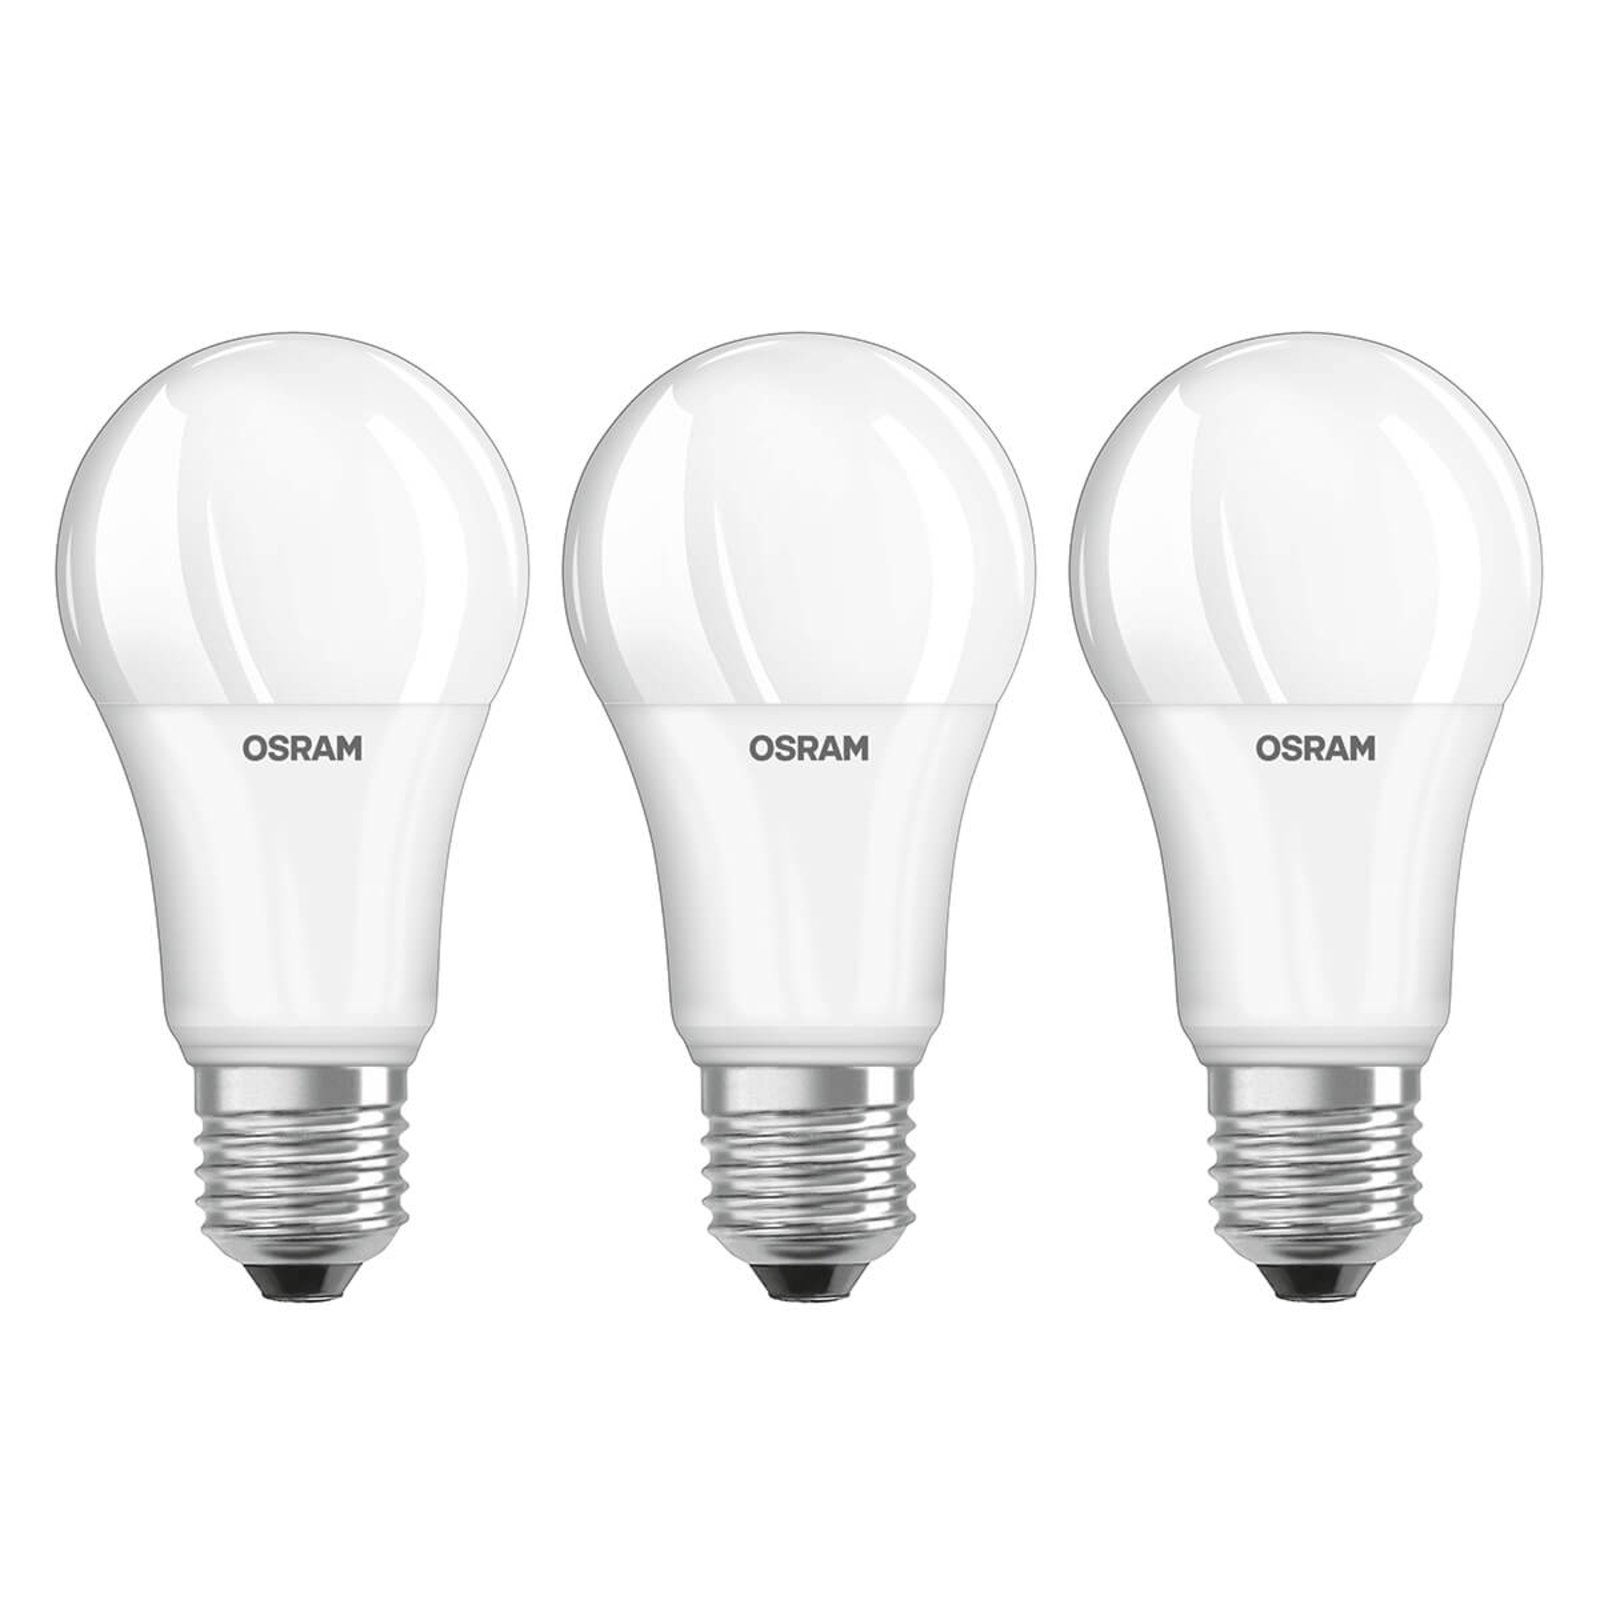 LED lámpa E27 13W, általános fehér, 3 db-os